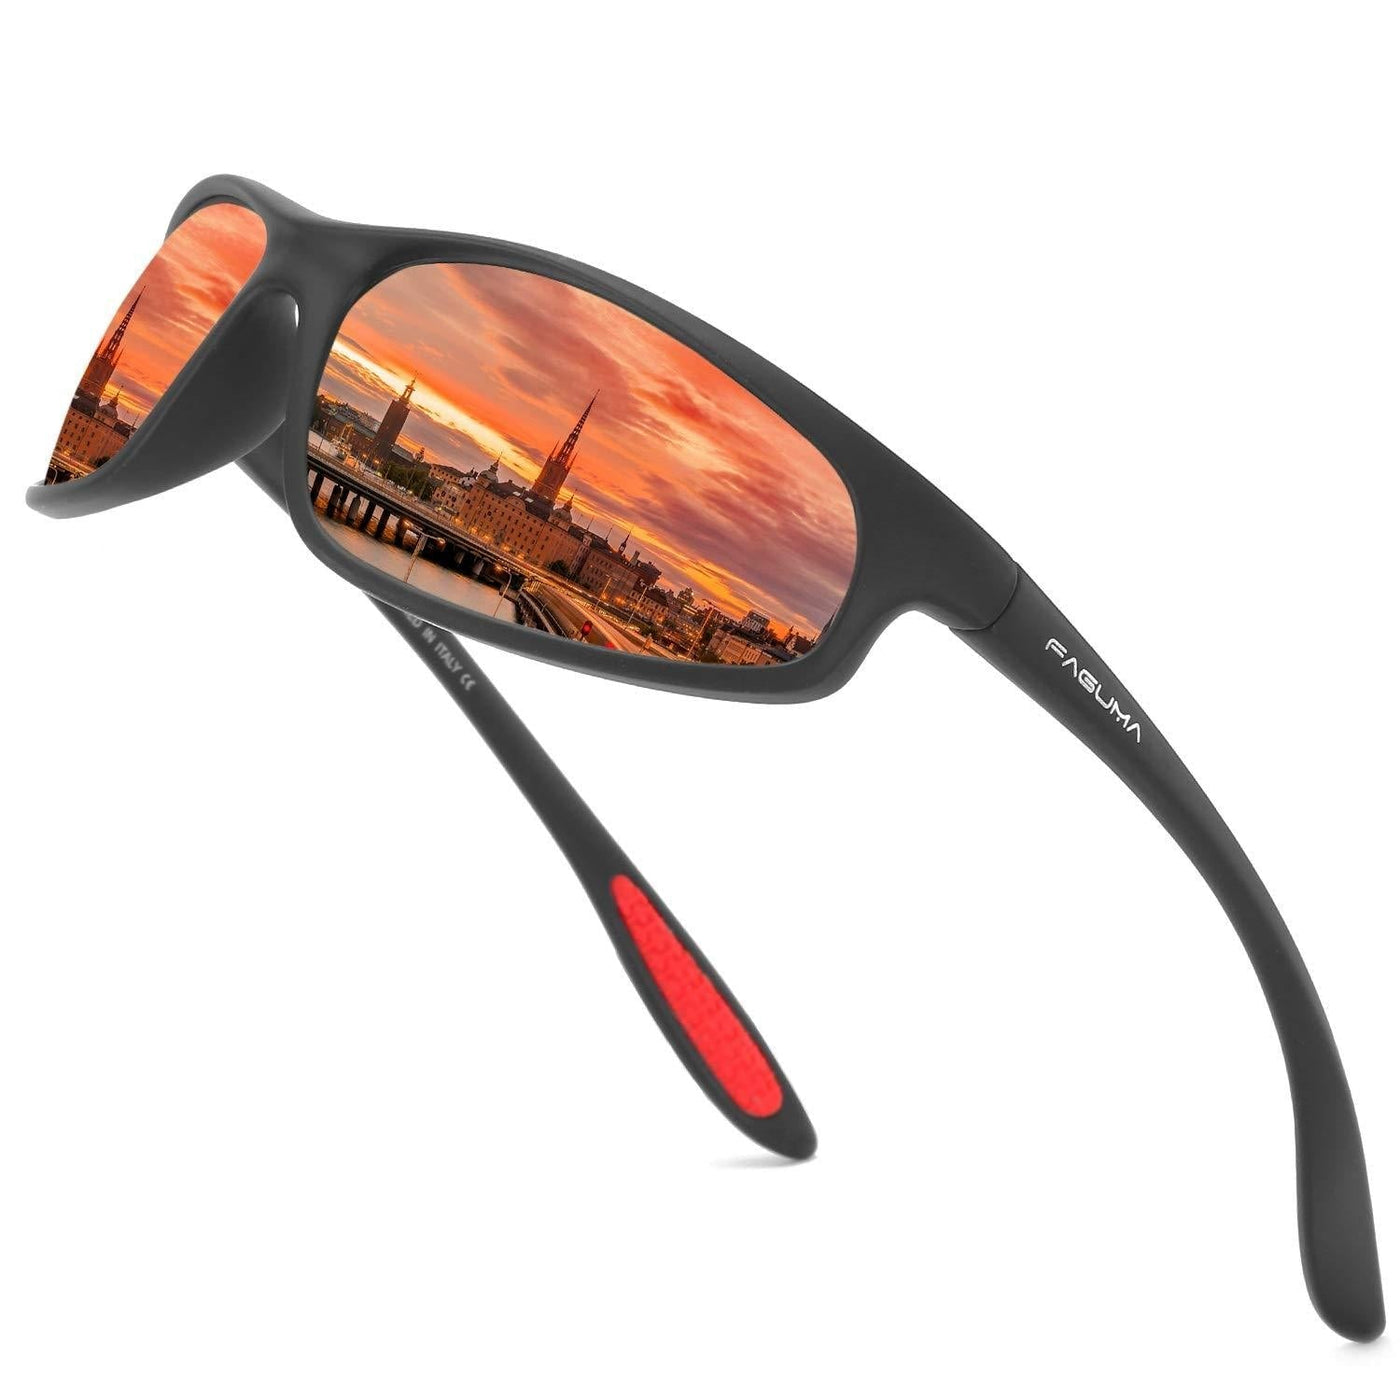 Buy G2RISE Polarized Baseball Sunglasses for Men Women Youth